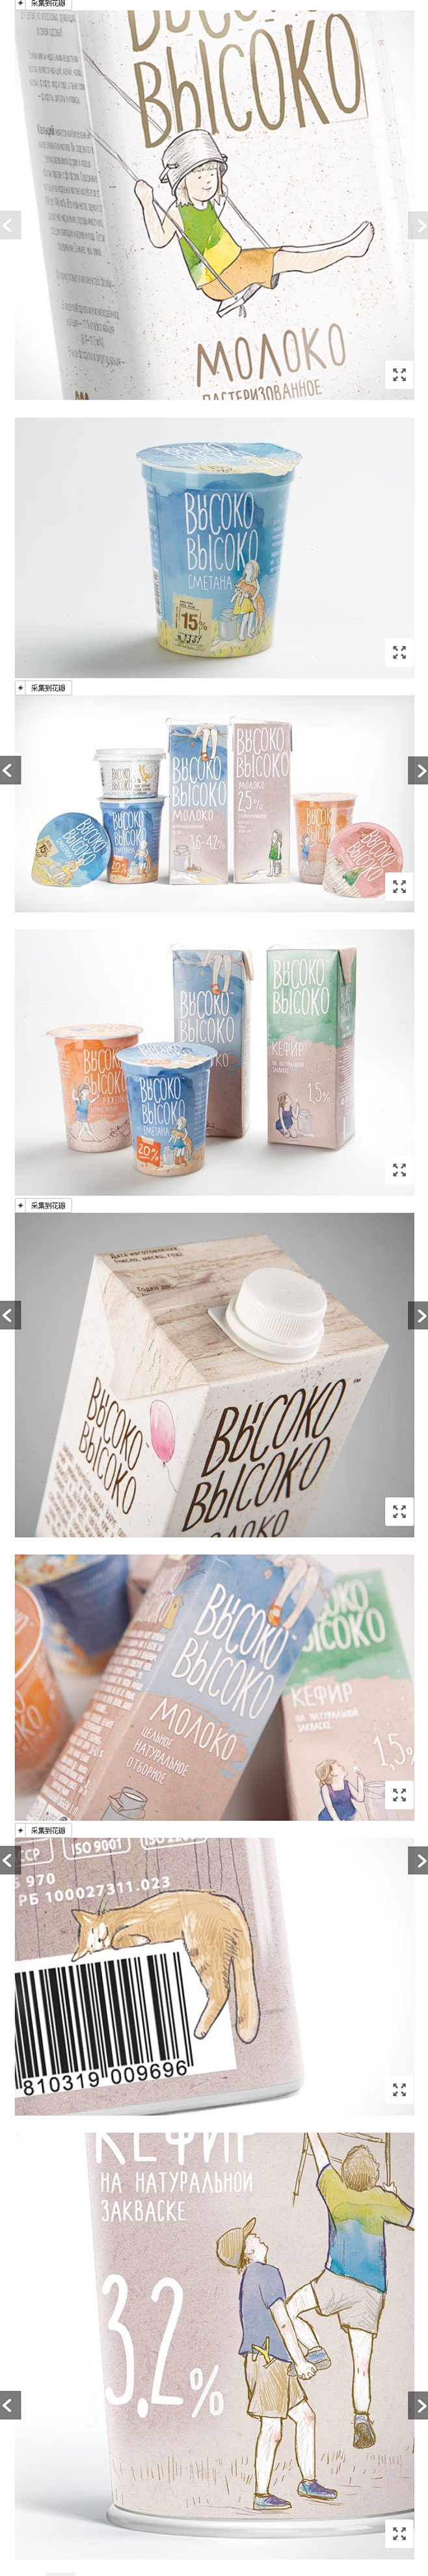 小清新牛奶包装设计 | 视觉中国